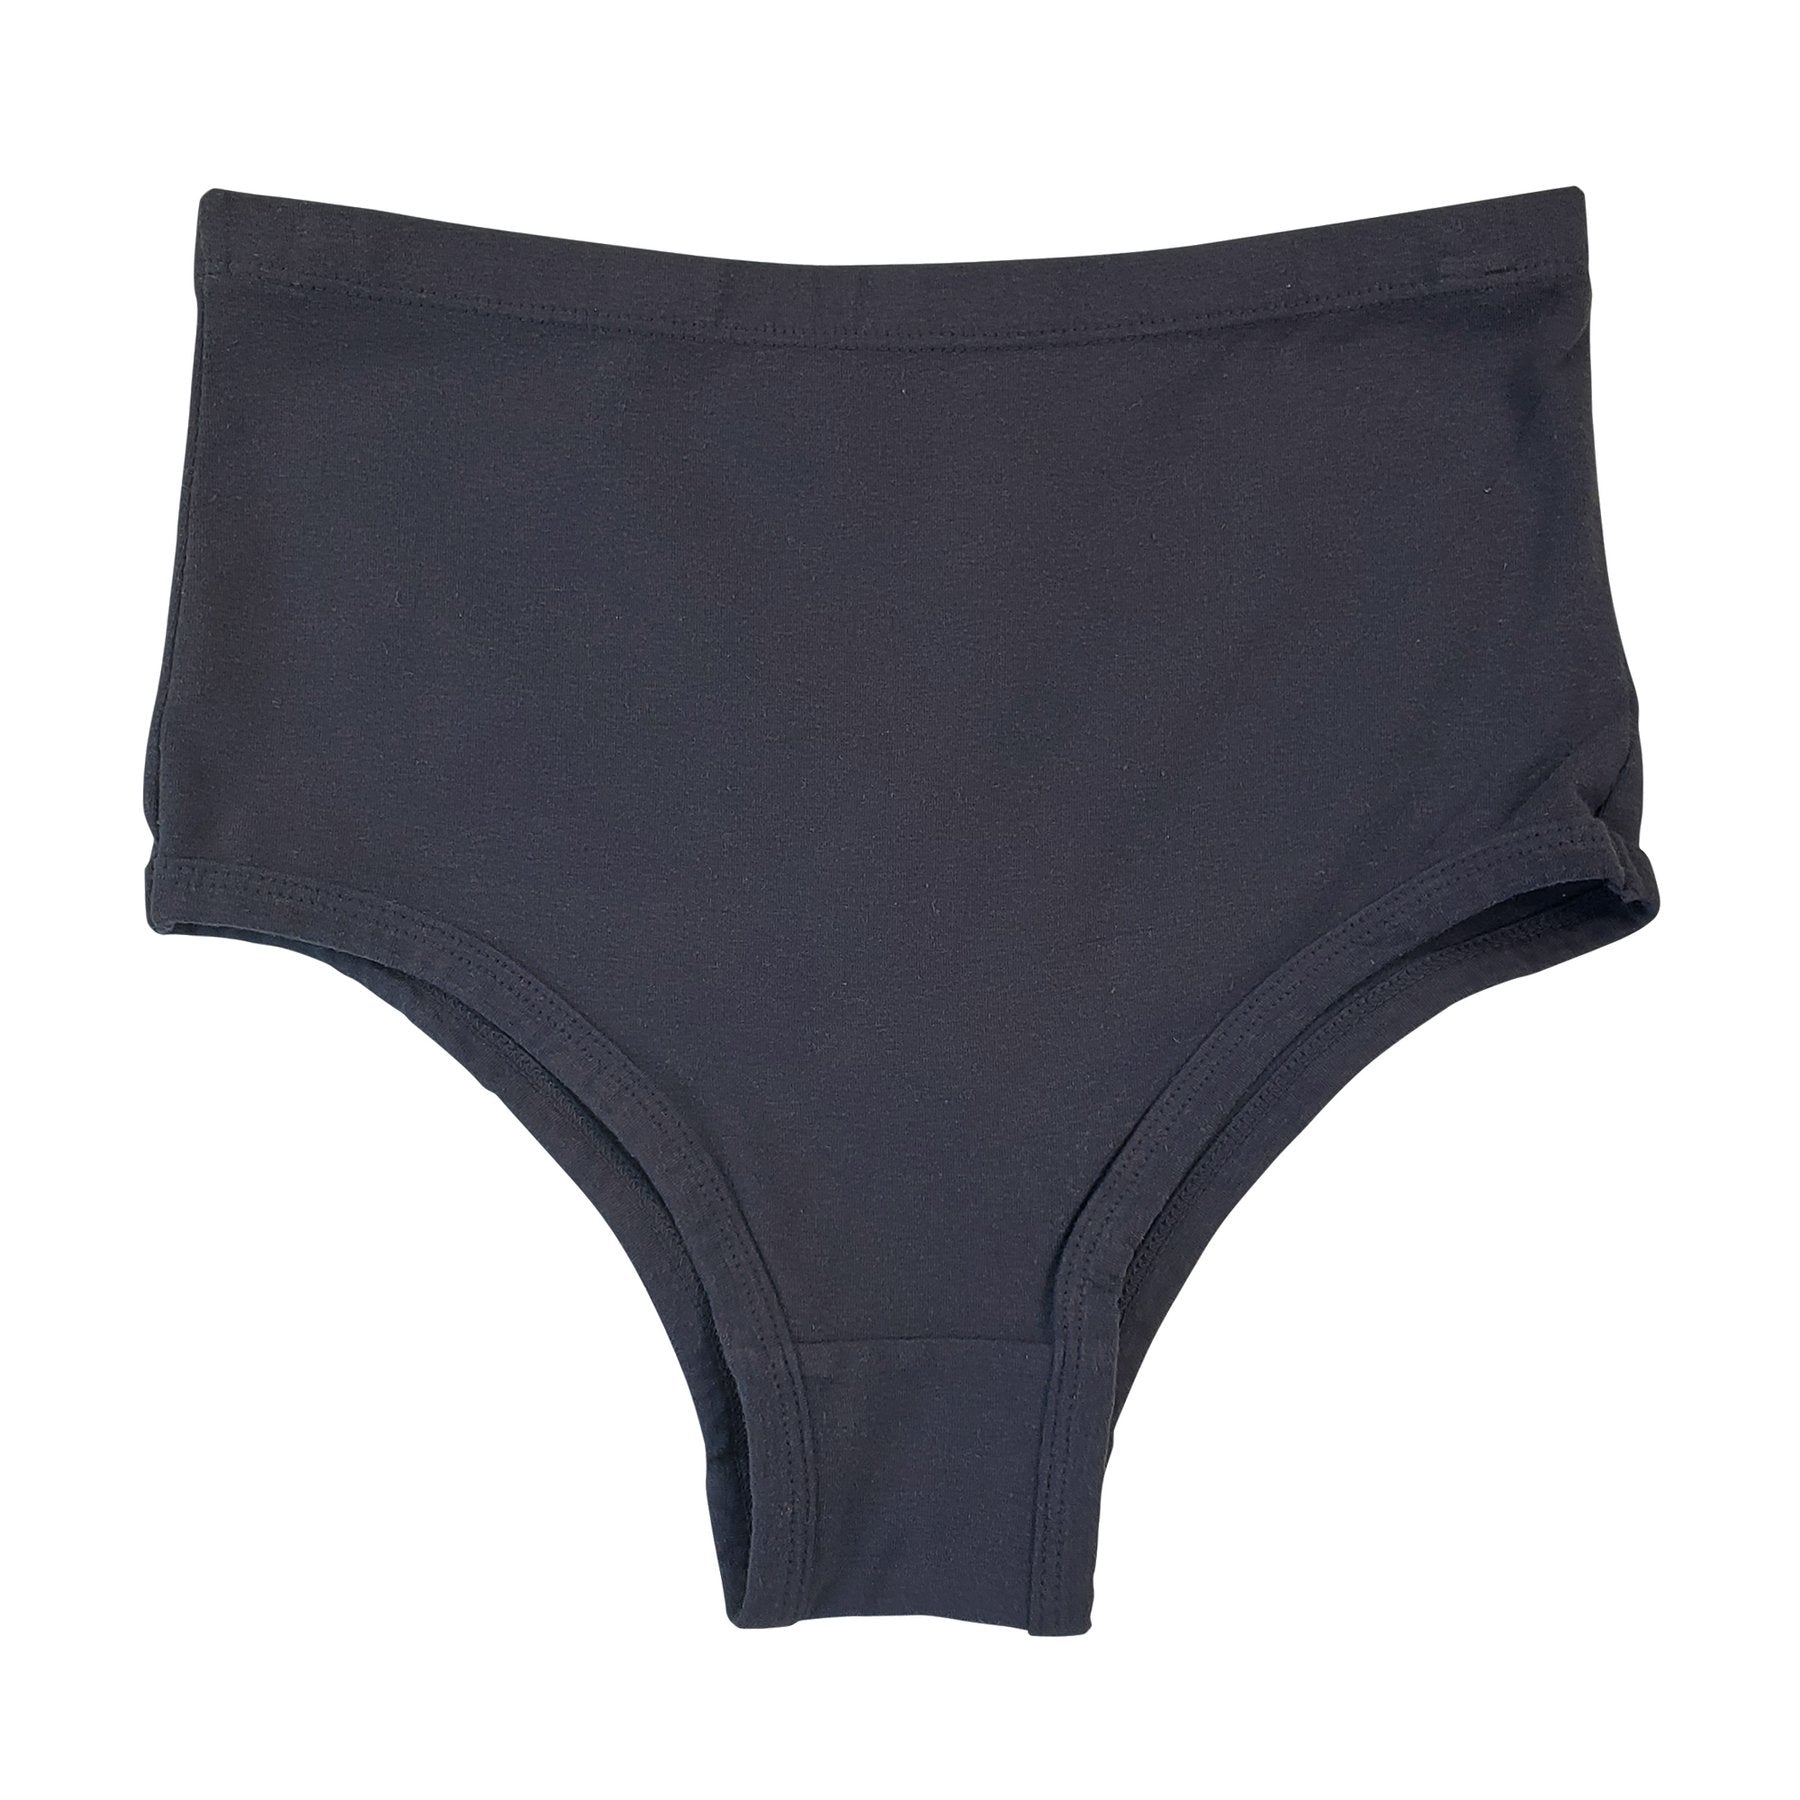 Bras & Underwear – Jungmaven